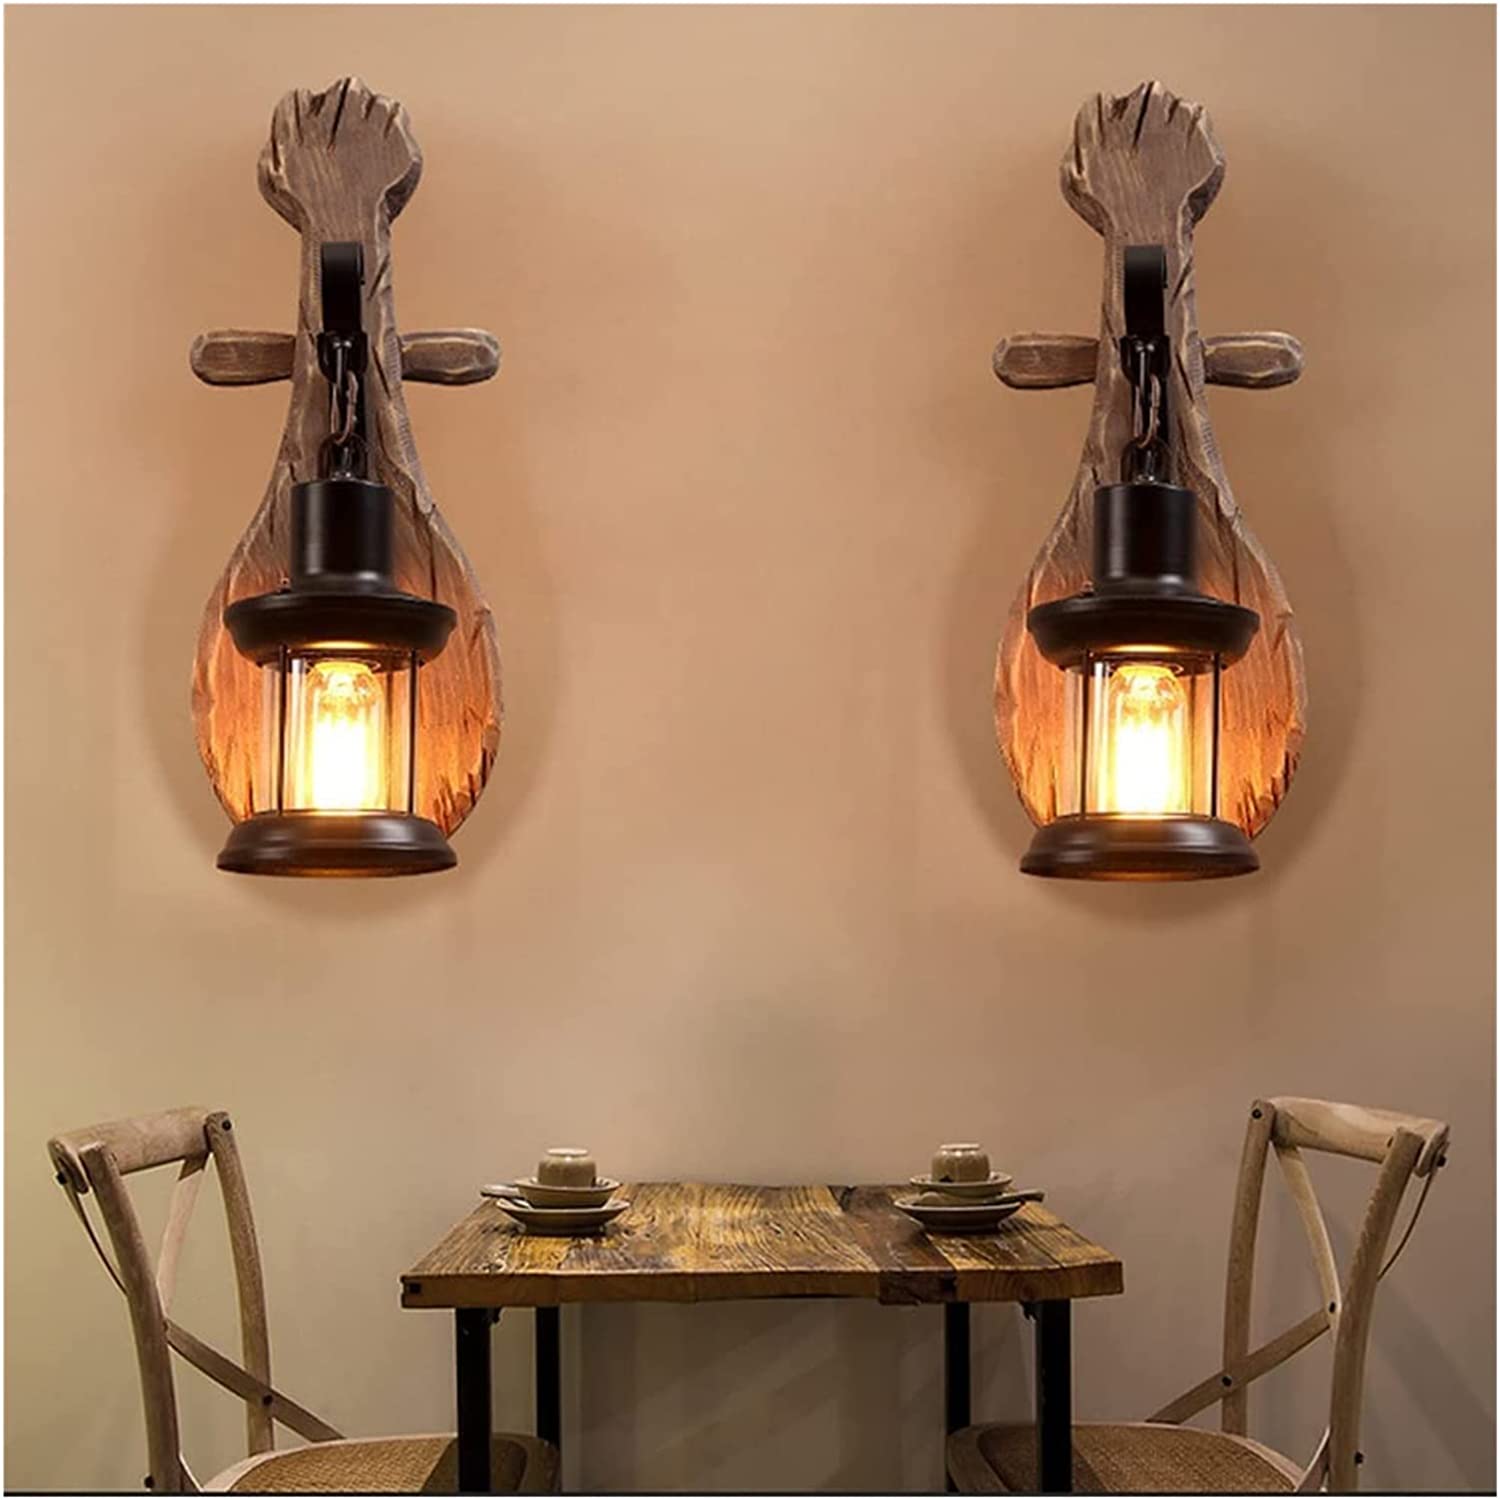 Sự kết hợp tinh tế giữa các mẫu đèn gỗ ốp tường cũng mang đến vẻ đẹp giản dị cho phong cách nhà retro